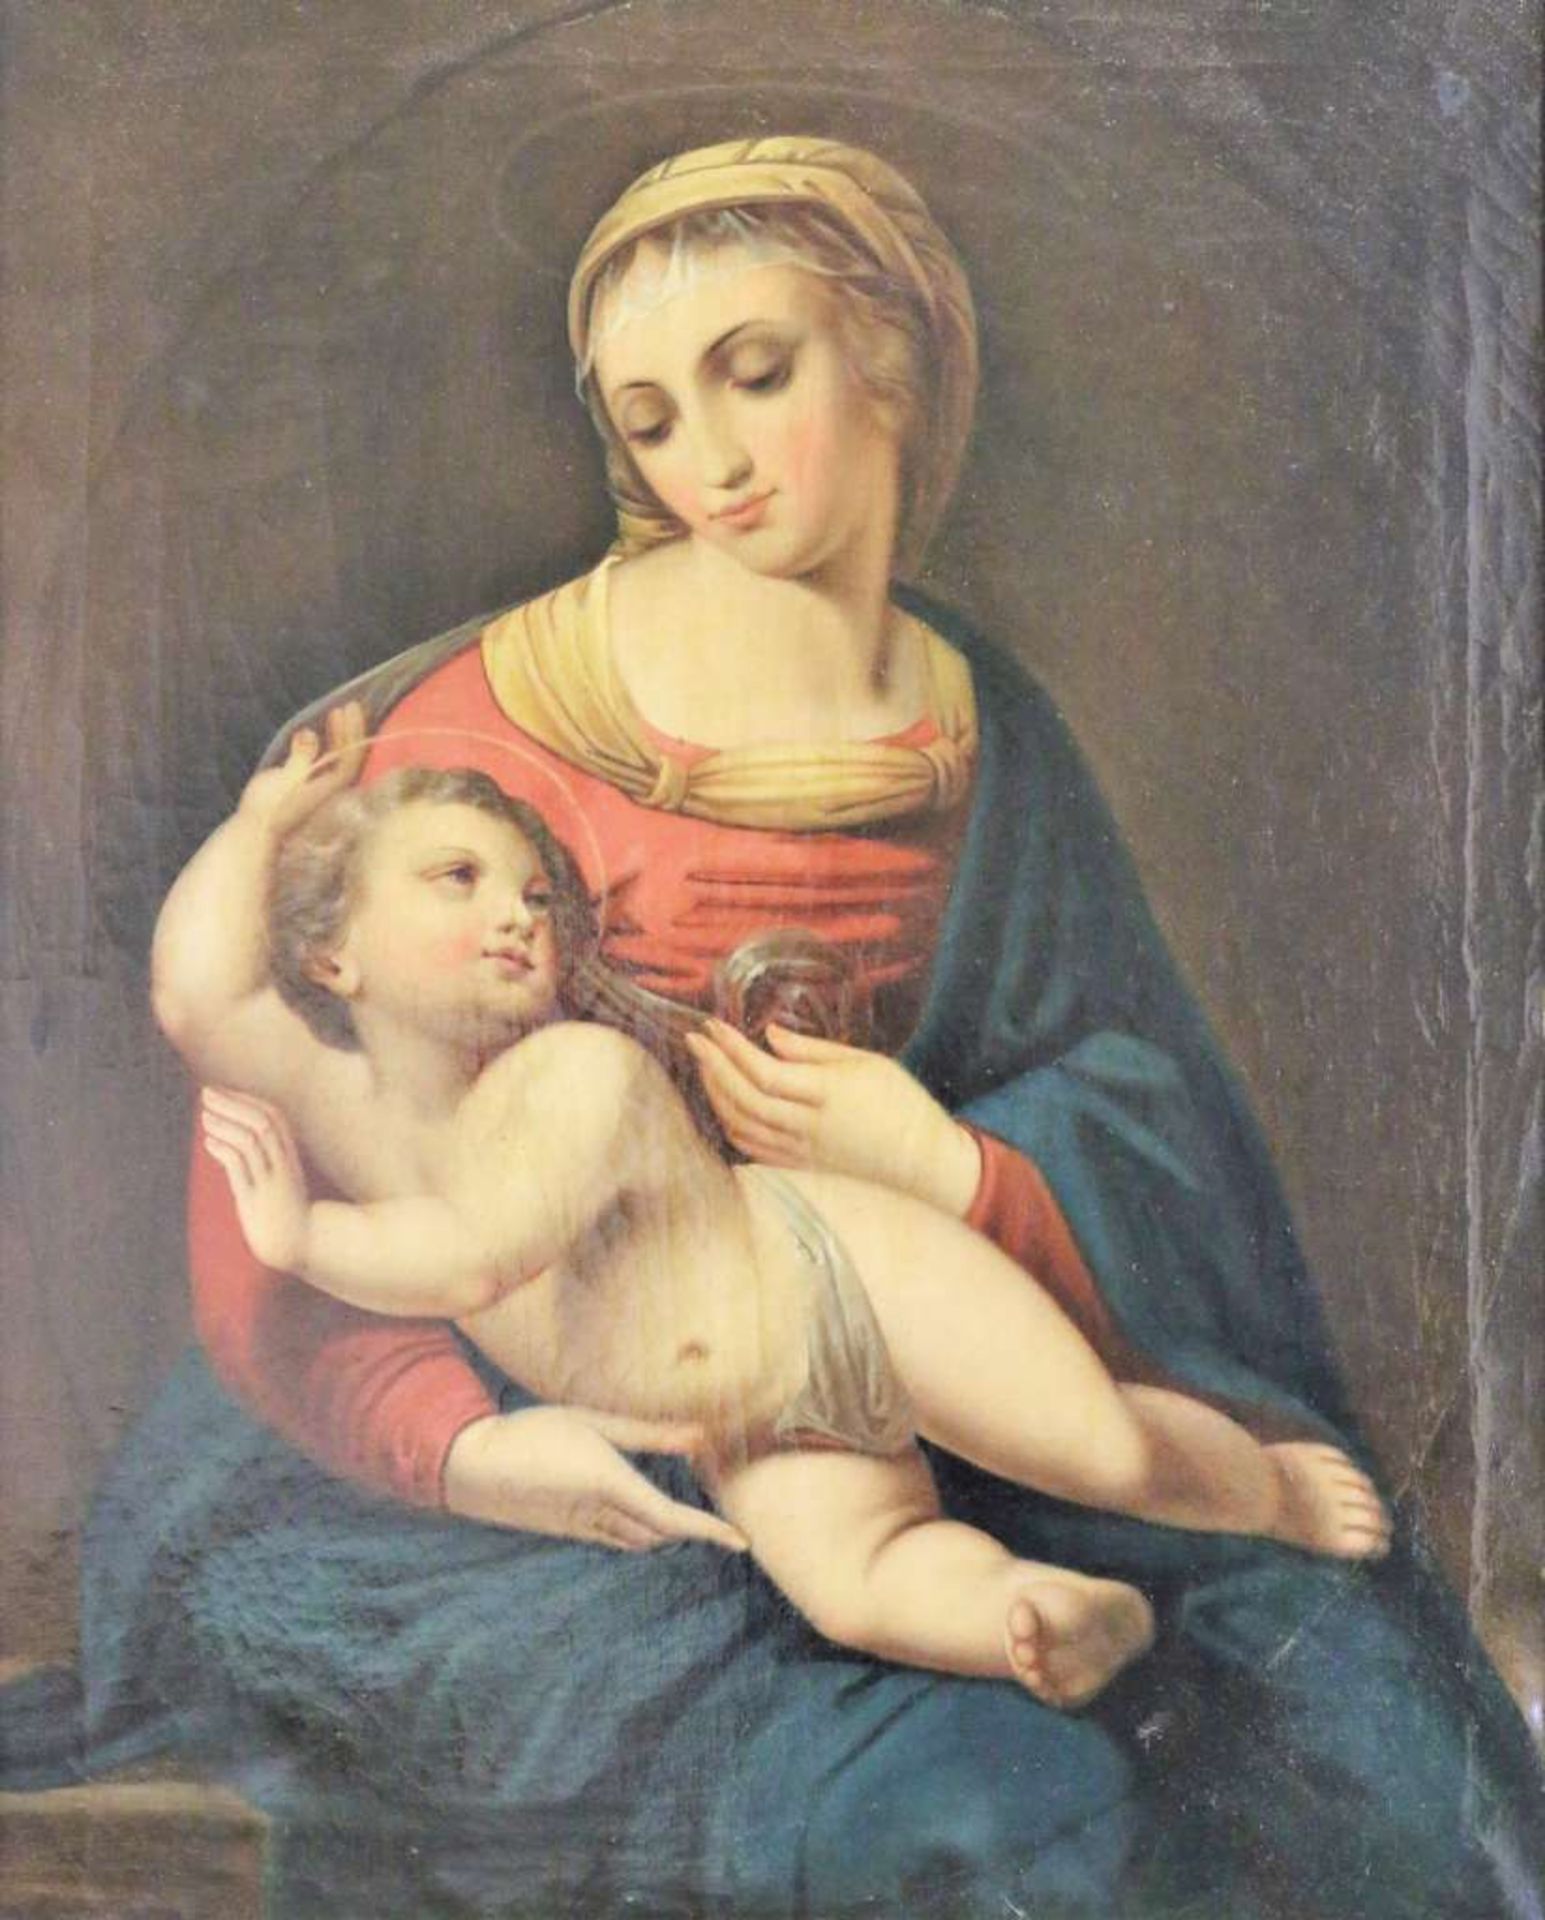 RAPHAEL (1483-1520) nach, sog. "Bridgewater Madonna", wohl Italien, 18./19. Jh. Öl auf Leinwand,